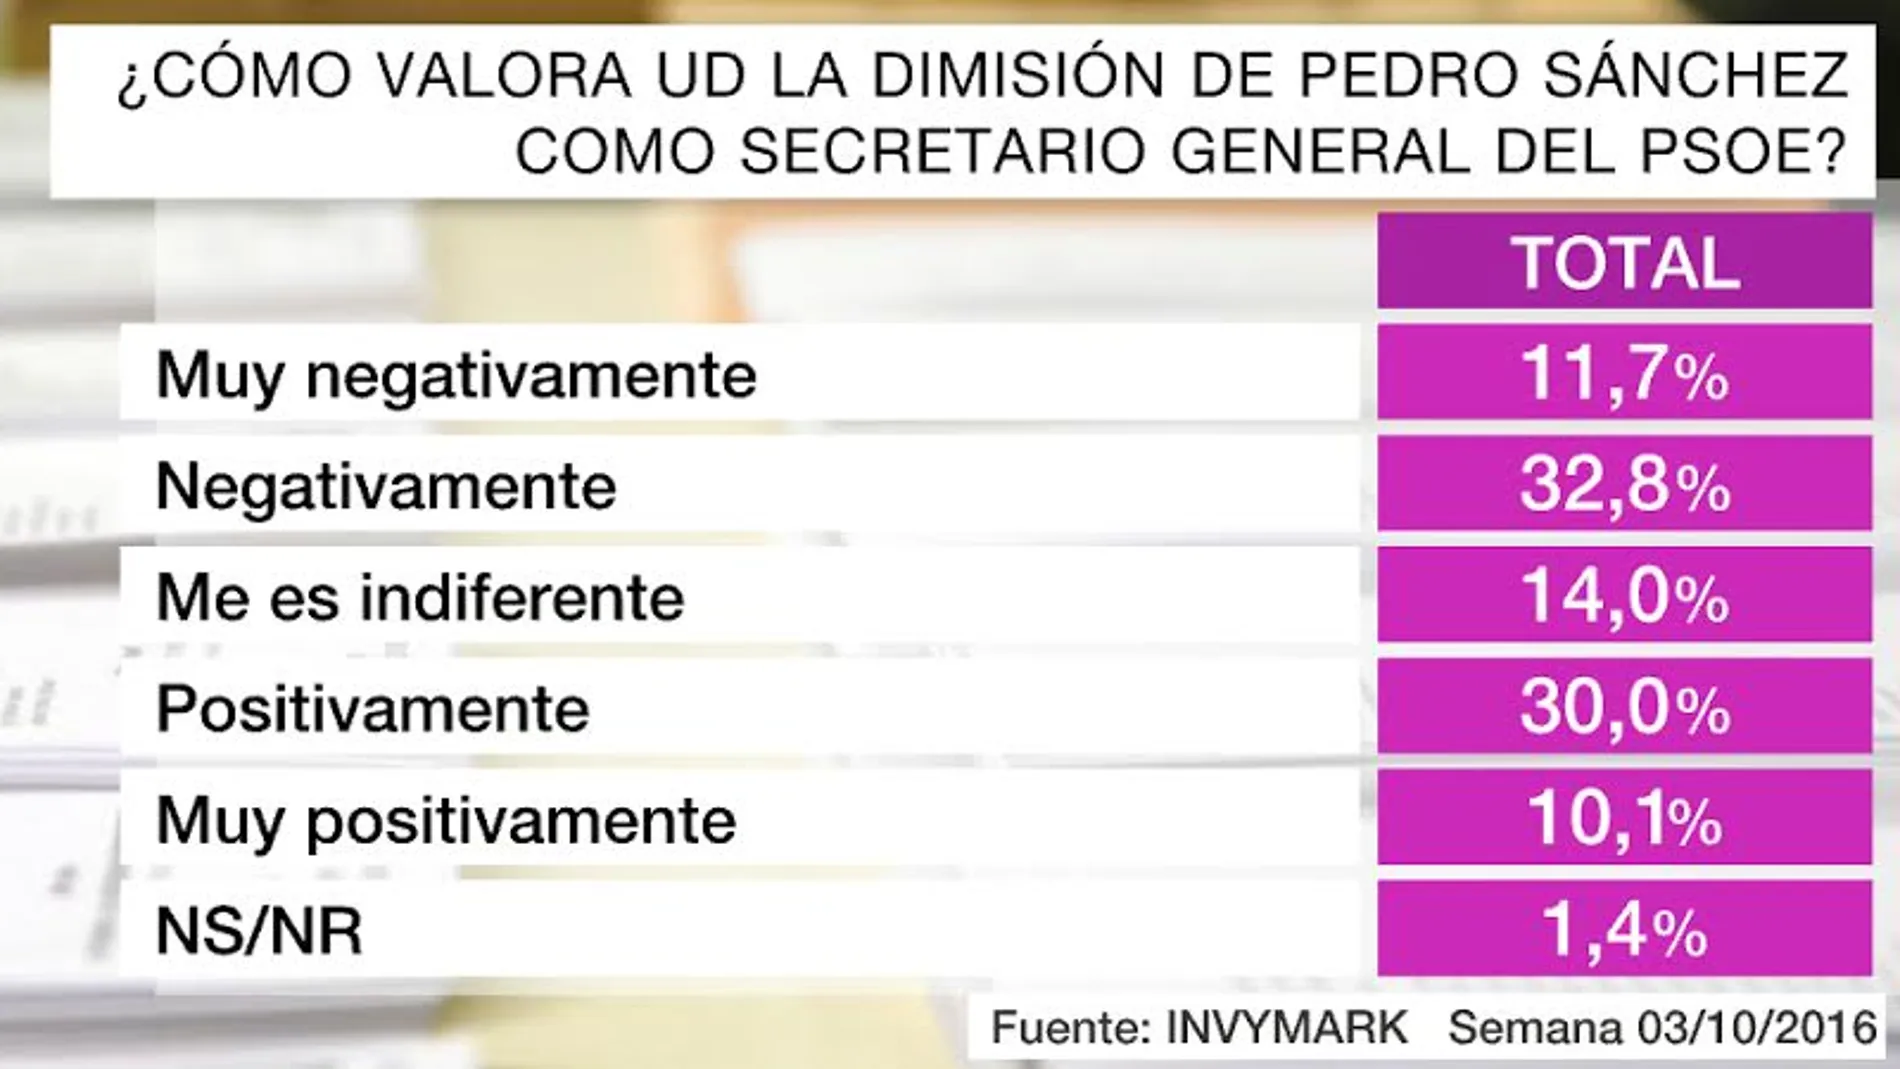 El 44% de los encuestados valora la dimisión de Pedro Sánchez de manera "negativa o muy negativa"